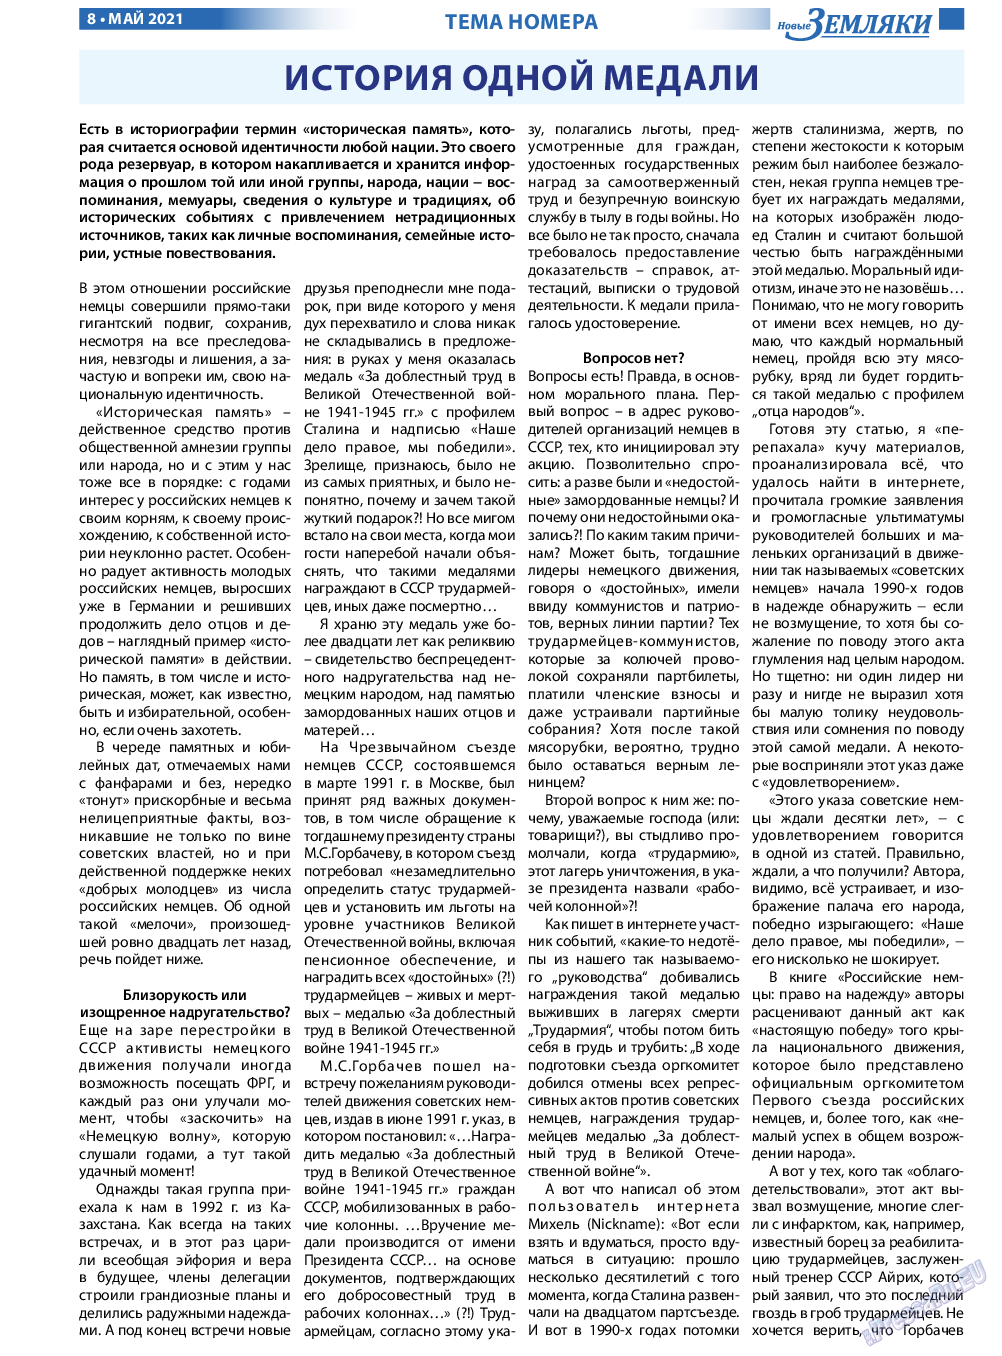 Новые Земляки, газета. 2021 №5 стр.8